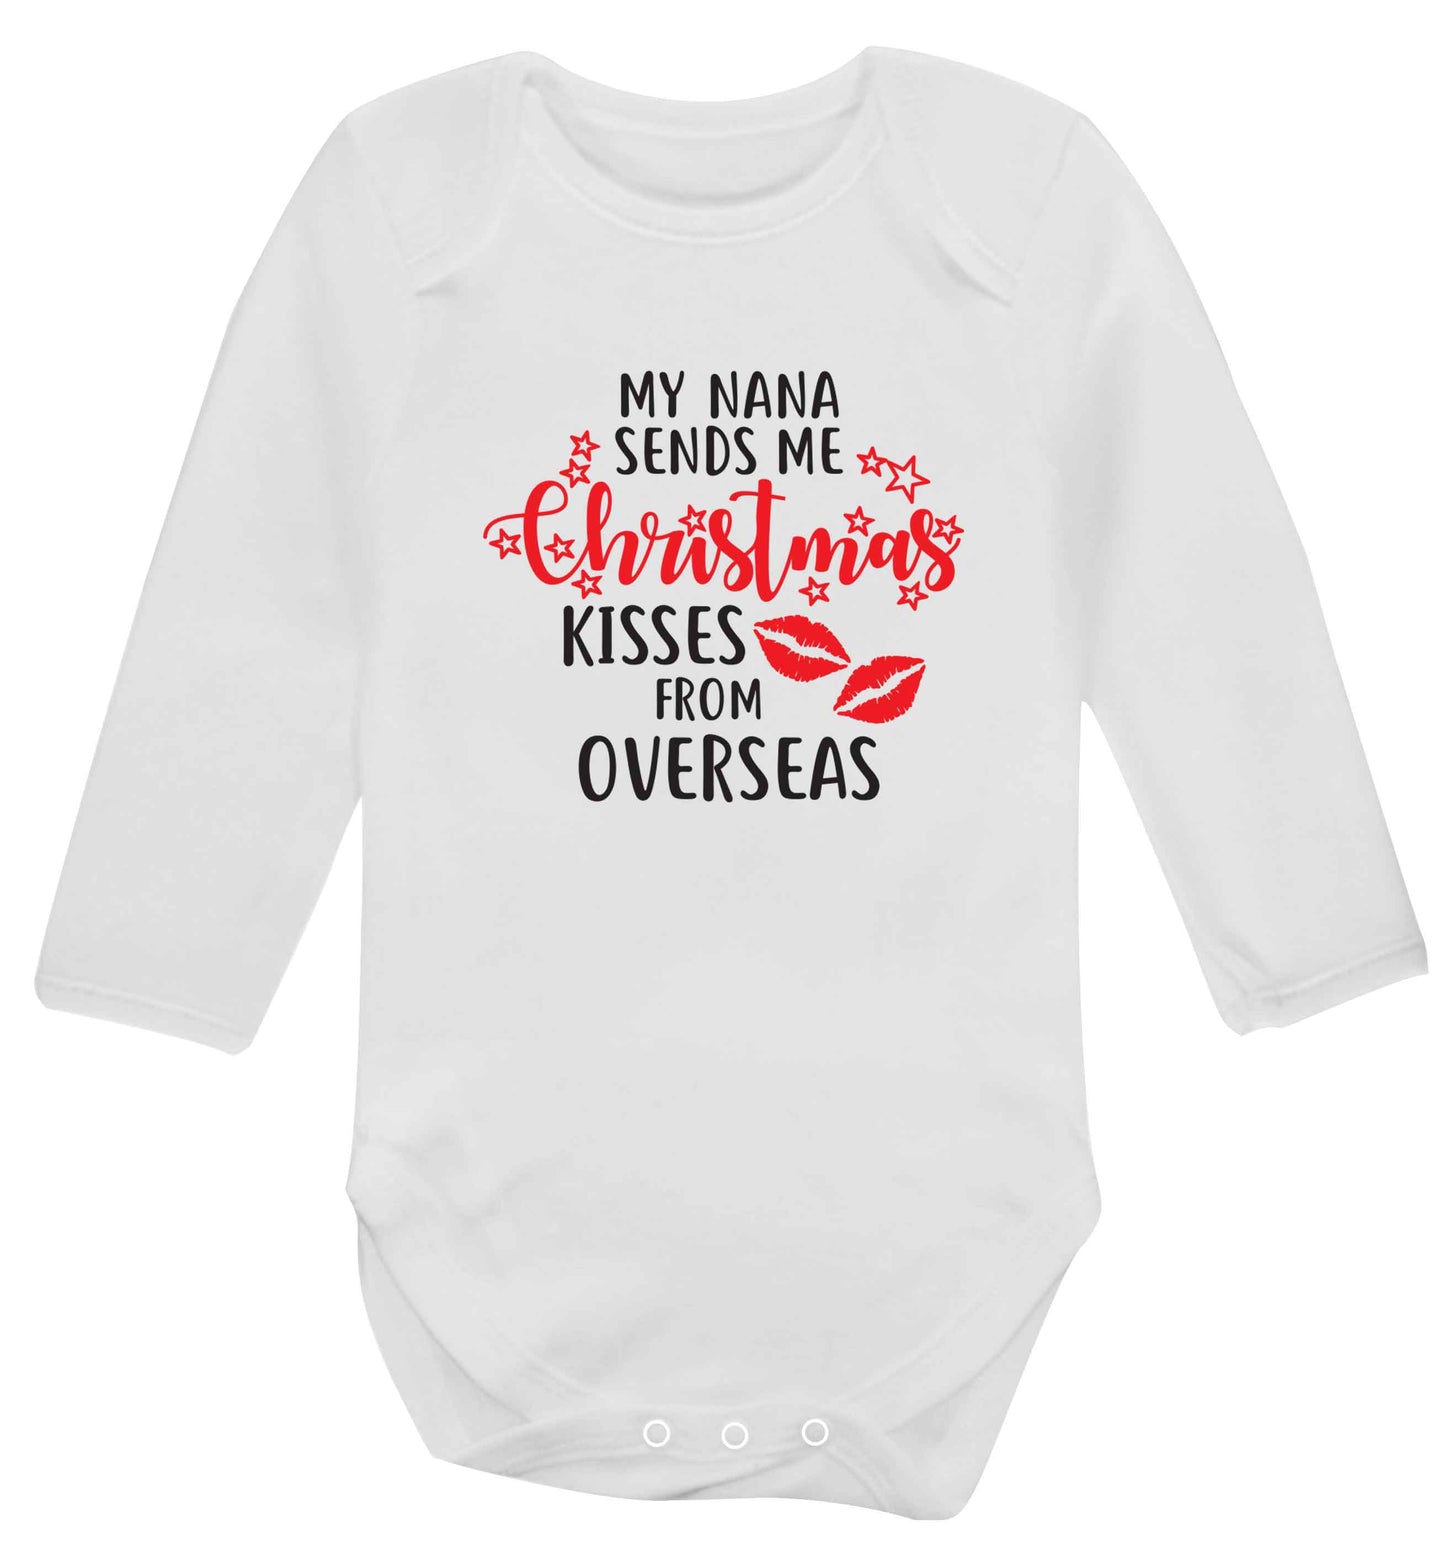 Grandma Christmas Kisses Overseas baby vest long sleeved white 6-12 months